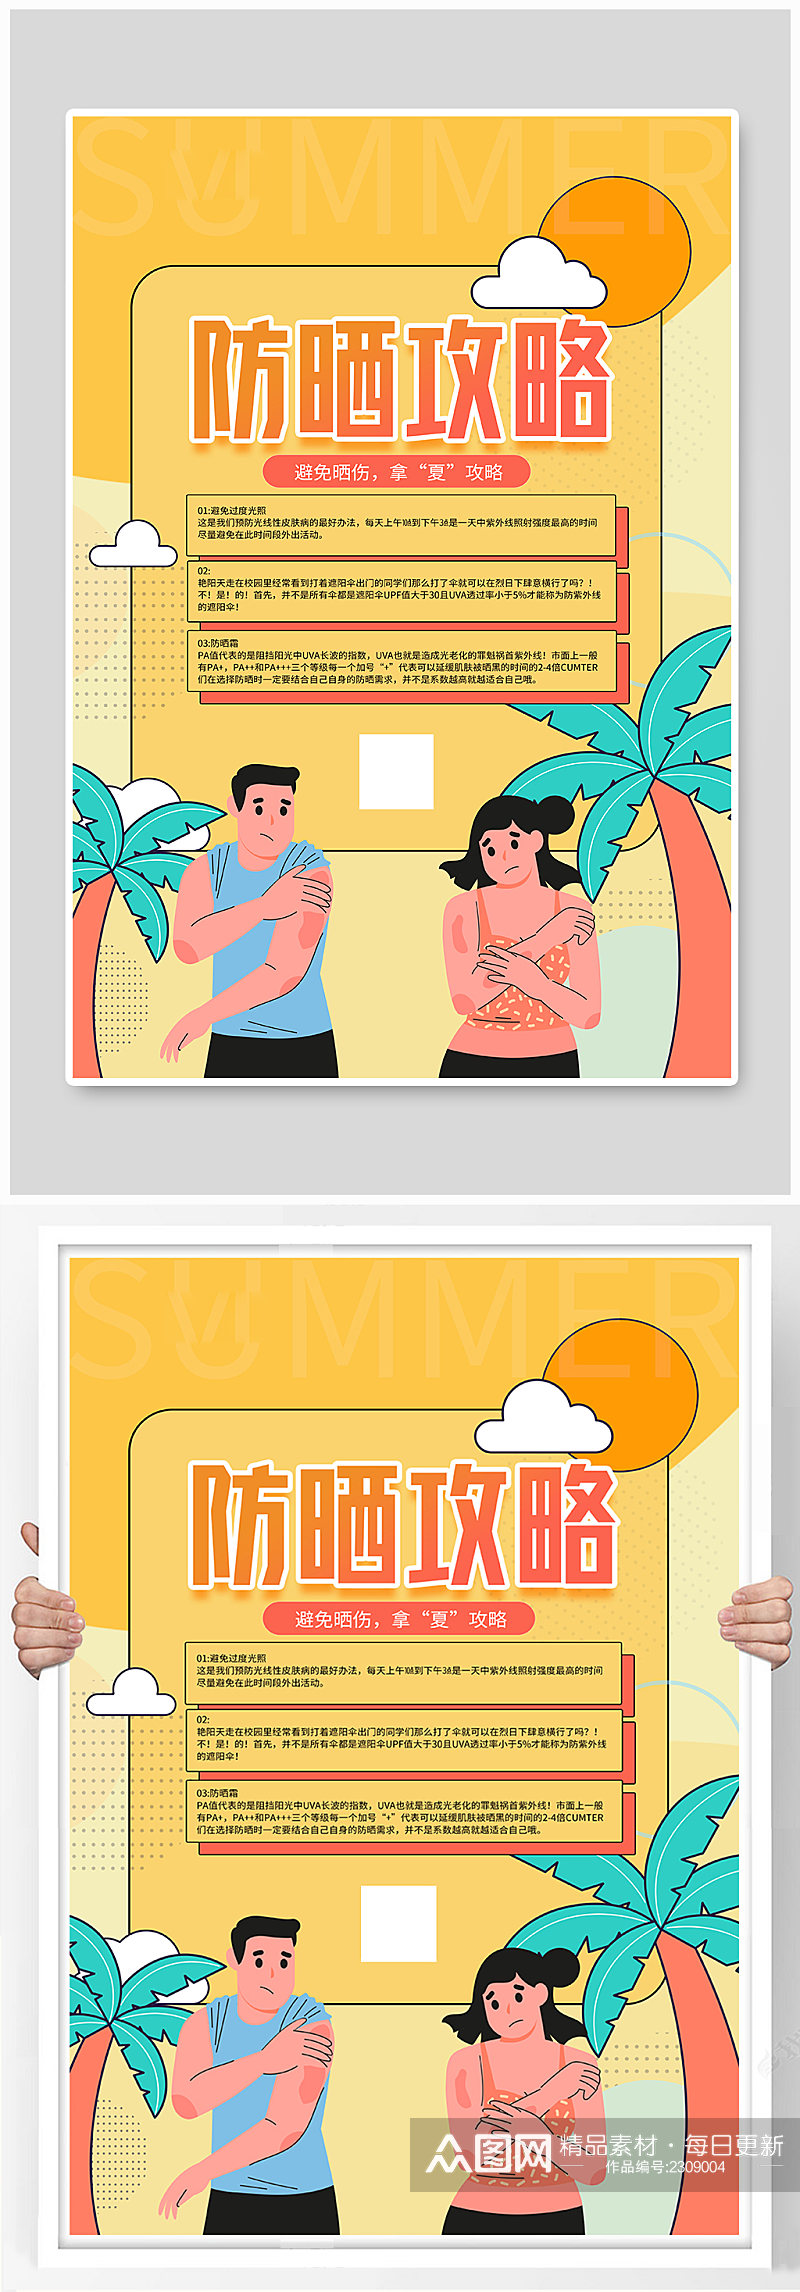 扁平风夏季防暑攻略宣传海报素材